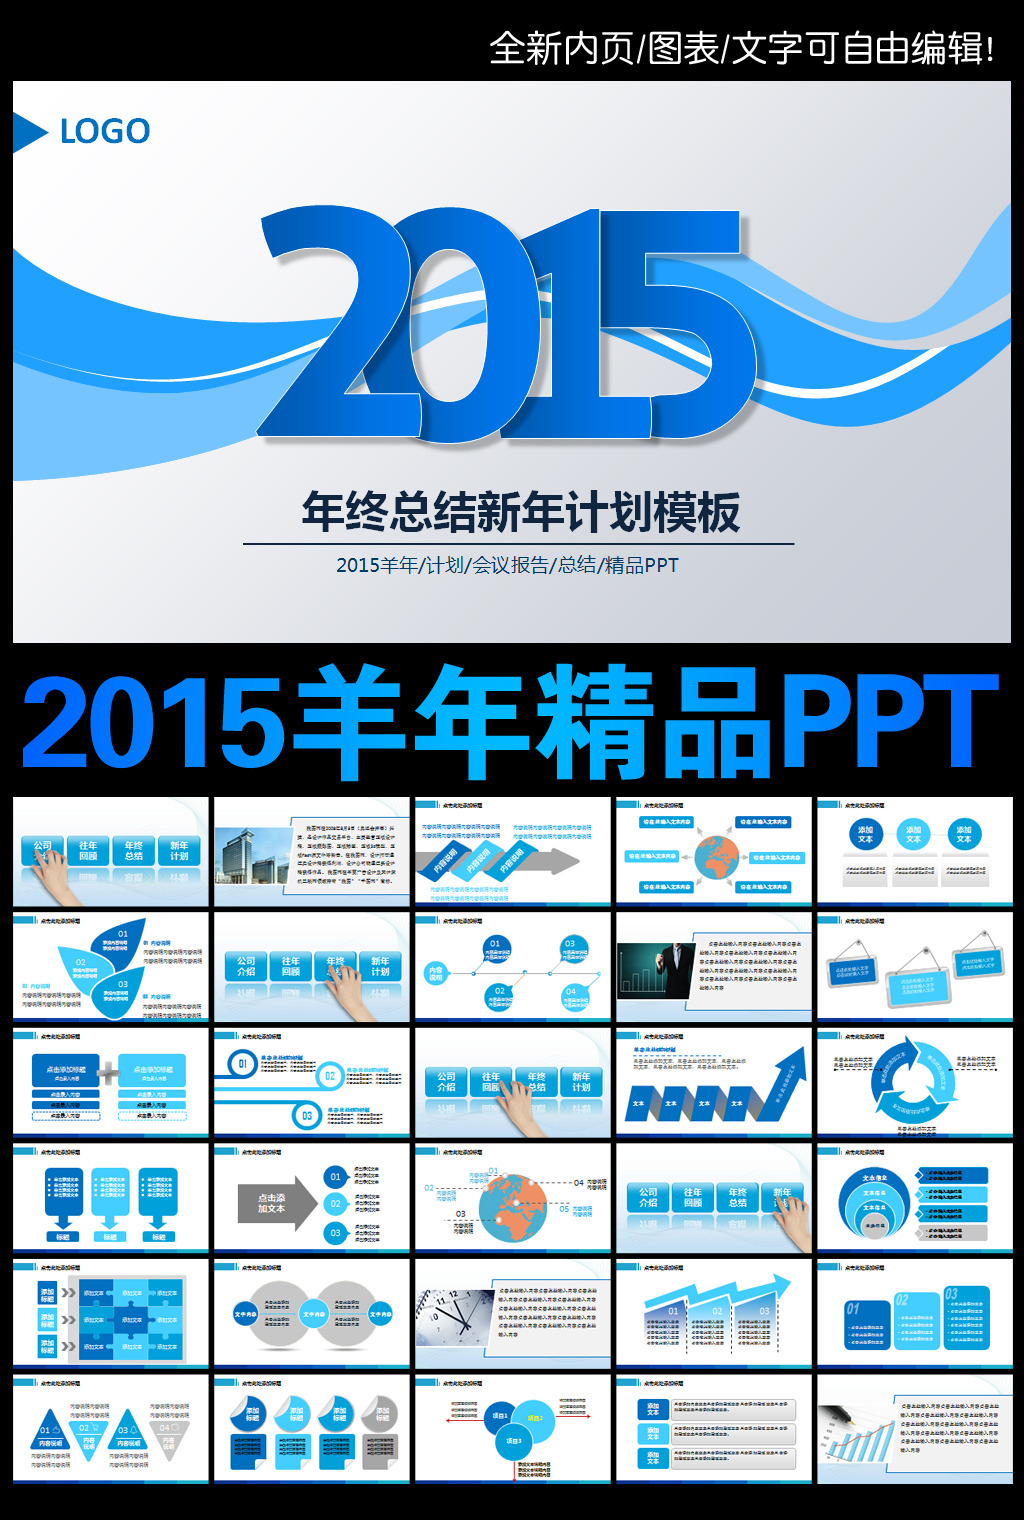 2015新年计划工作汇报总结PPT下载模板下载